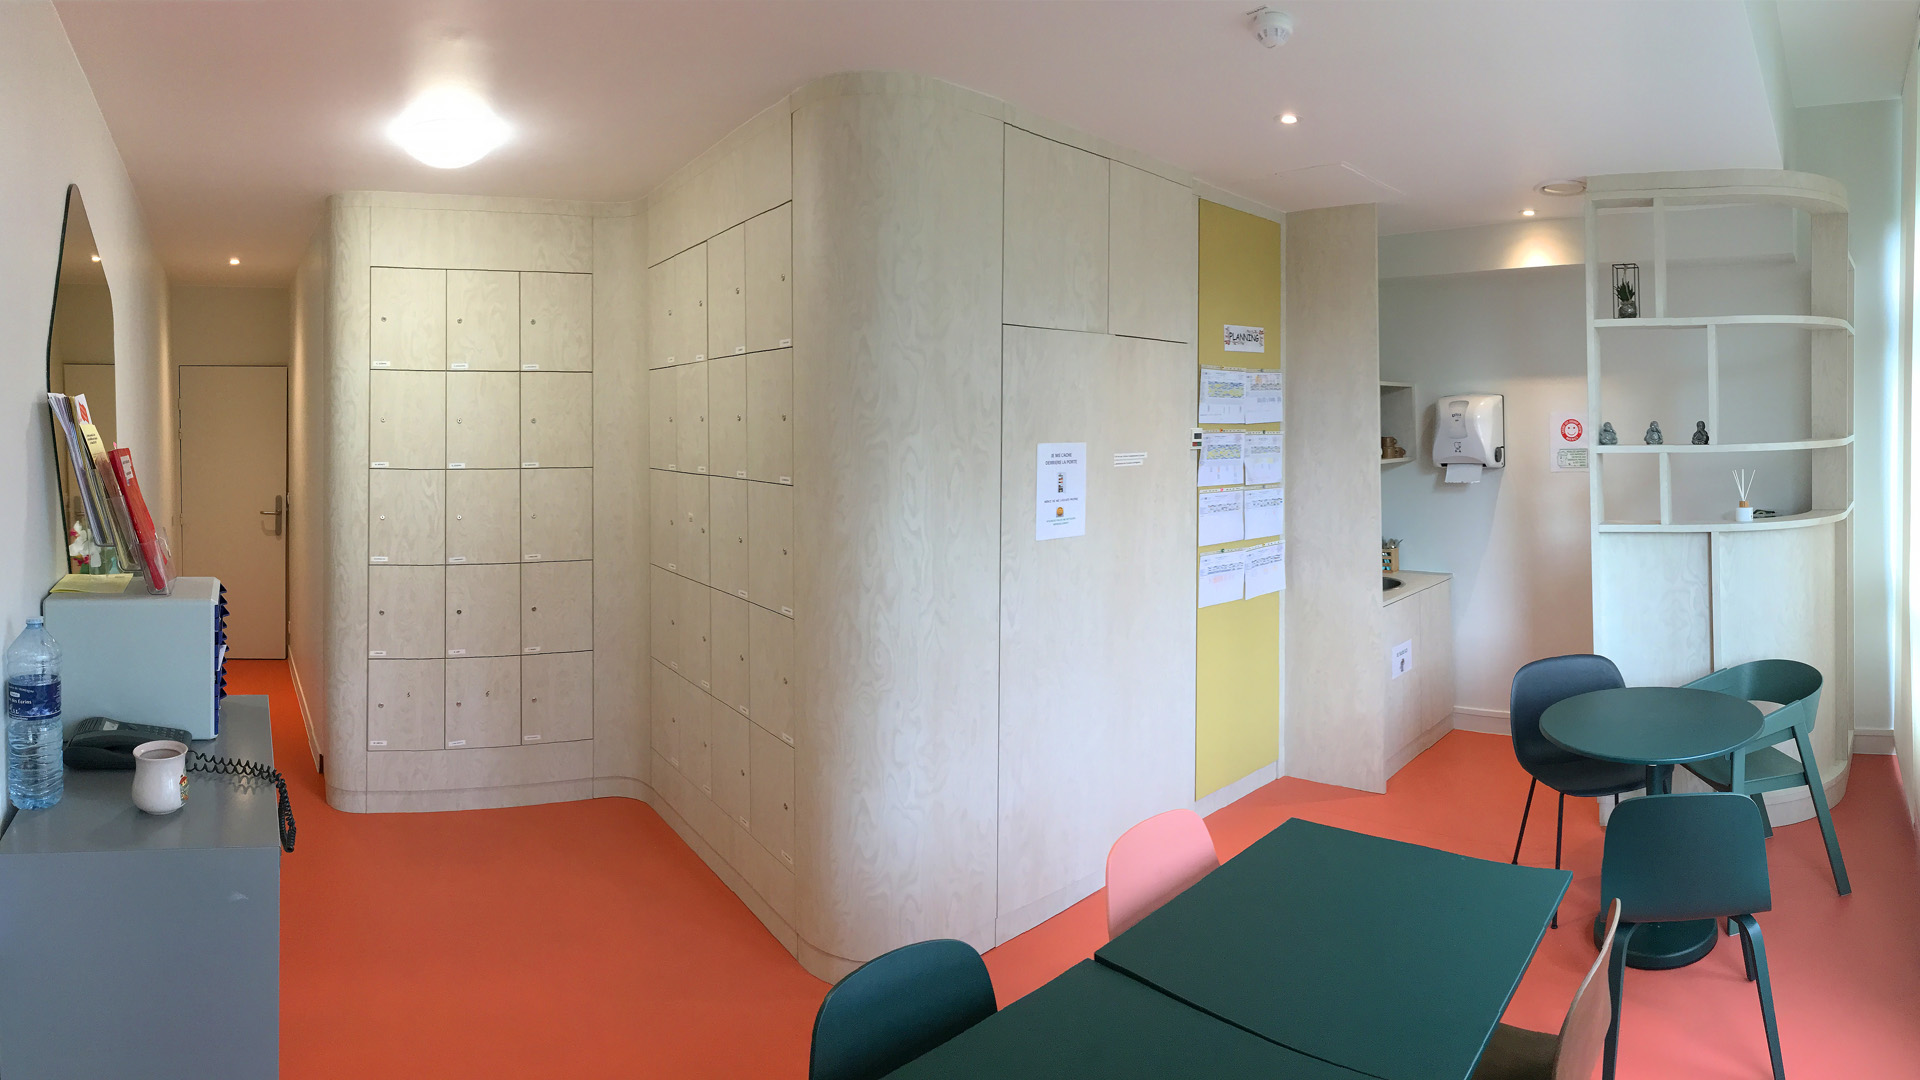 Salle de pause rénovée du personnel soignant d'un hôpital dans les tons beige, sol rosé et mobilier vert sapin.